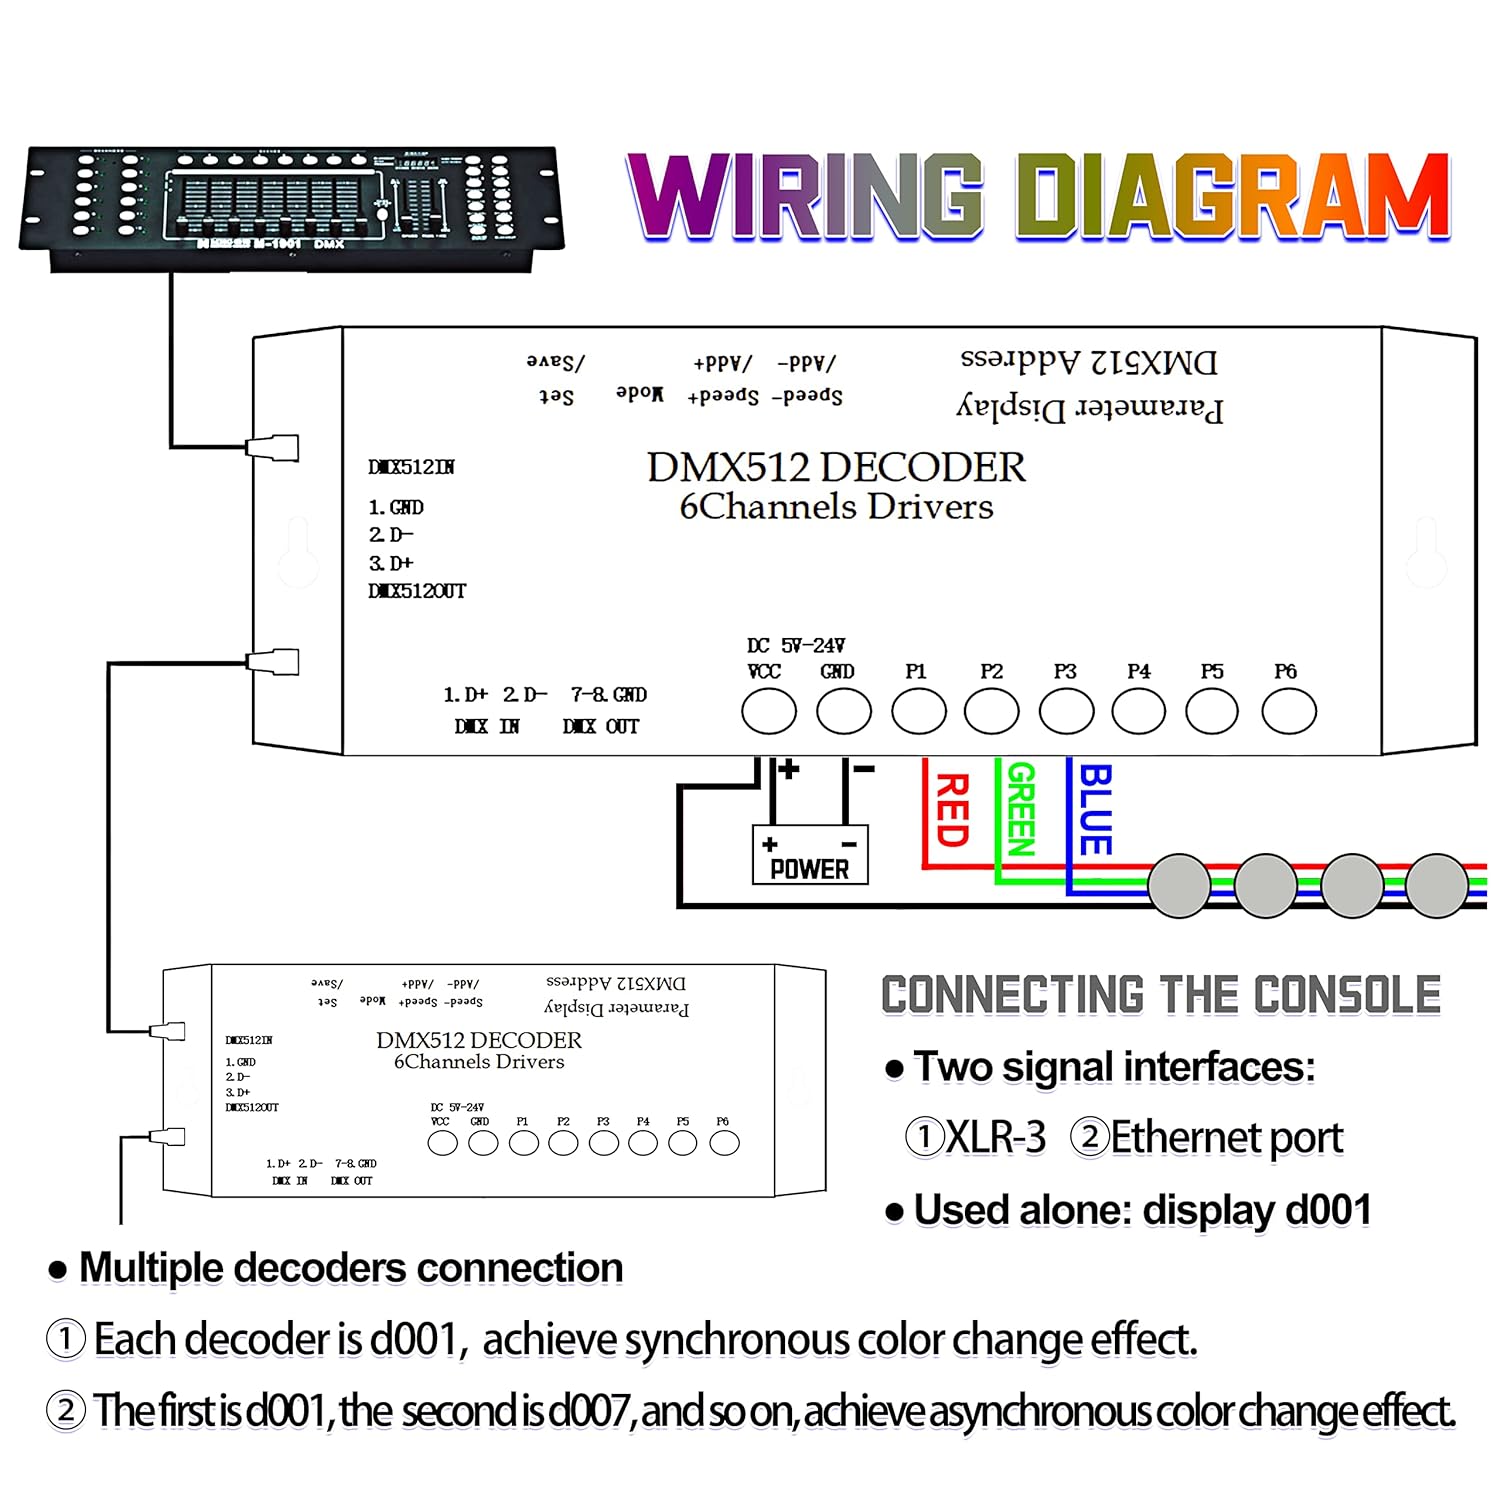 CANRIA DC 5V-24V 6 Channel DMX512 Decoder LED Controller, for RGBRGB RGBW RGBWW RGBWWW LED Strip Light, 4-Digit Display